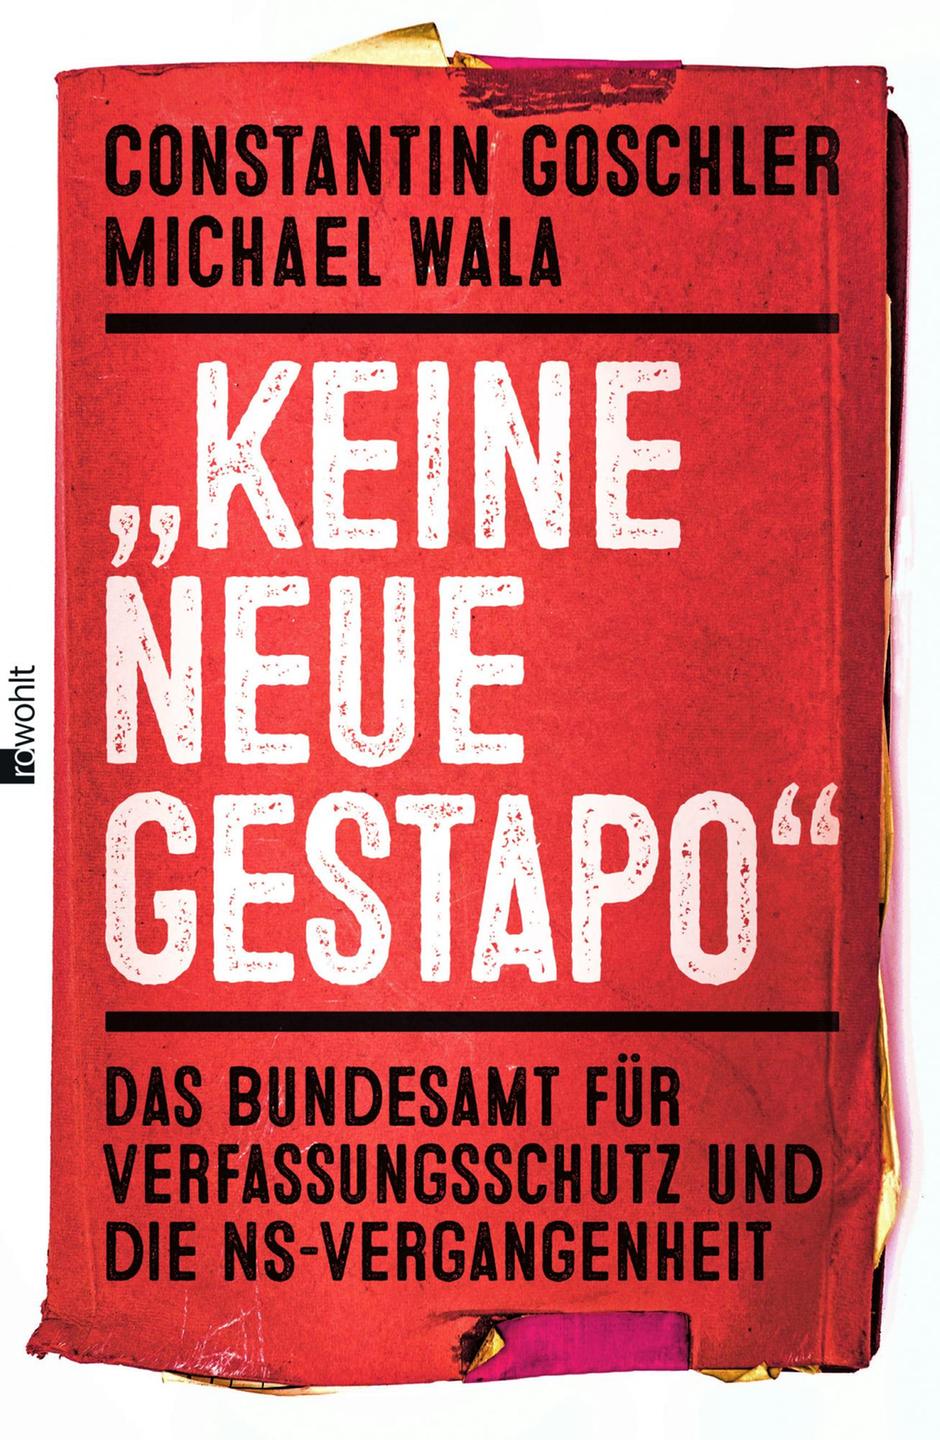 Constantin Goschler, Michael Wala: "Keine neue Gestapo - Das Bundesamt für Verfassungsschutz und die NS-Vergangenheit